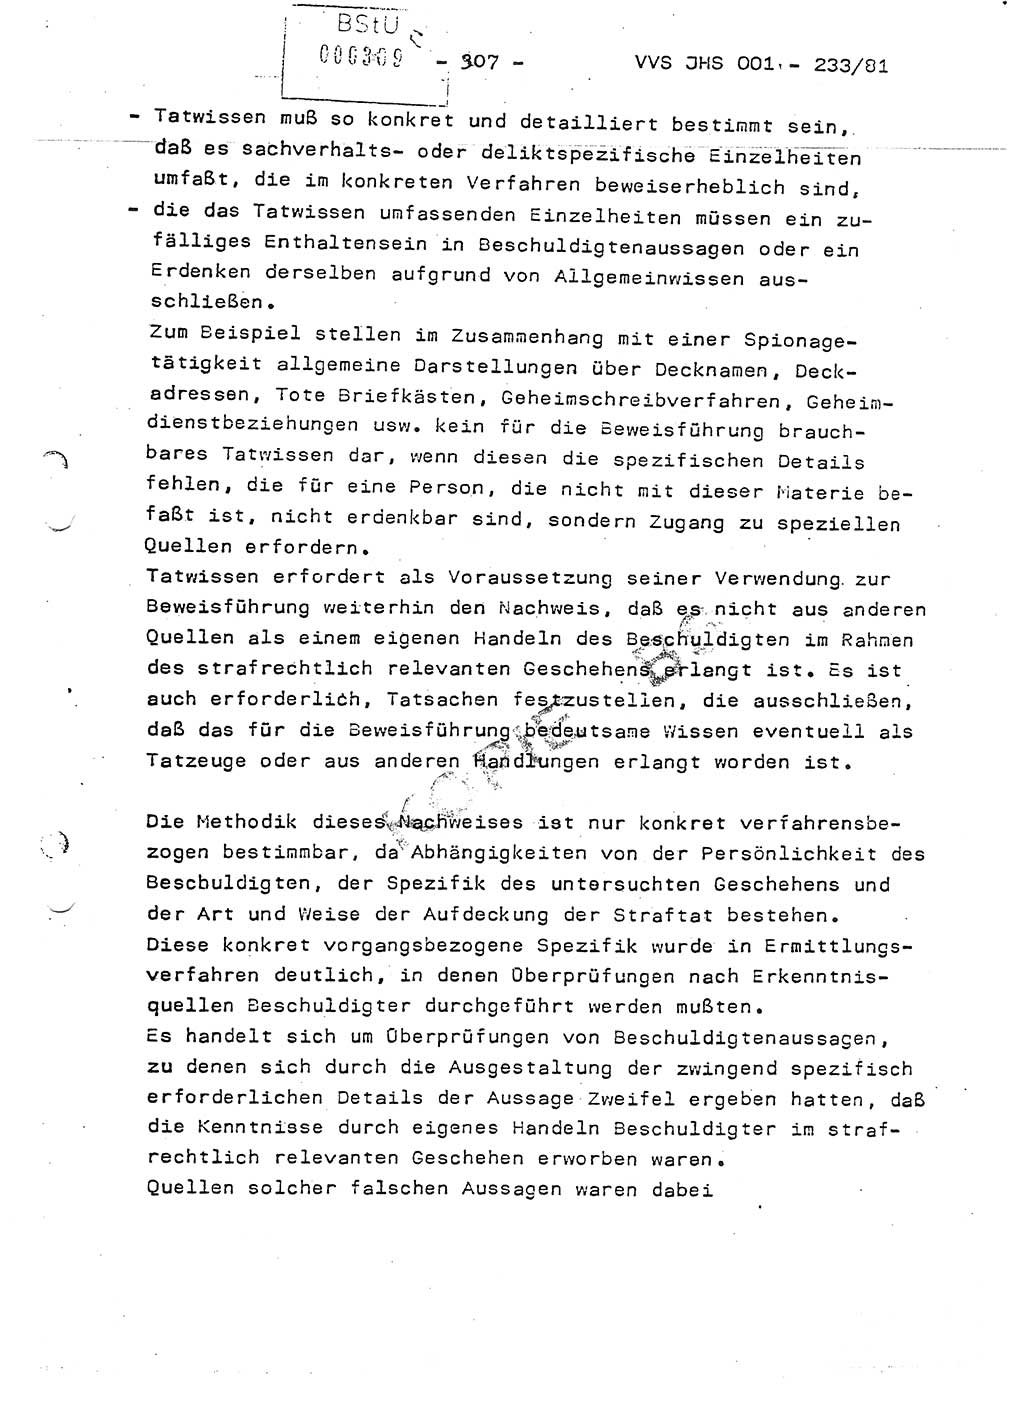 Dissertation Oberstleutnant Horst Zank (JHS), Oberstleutnant Dr. Karl-Heinz Knoblauch (JHS), Oberstleutnant Gustav-Adolf Kowalewski (HA Ⅸ), Oberstleutnant Wolfgang Plötner (HA Ⅸ), Ministerium für Staatssicherheit (MfS) [Deutsche Demokratische Republik (DDR)], Juristische Hochschule (JHS), Vertrauliche Verschlußsache (VVS) o001-233/81, Potsdam 1981, Blatt 307 (Diss. MfS DDR JHS VVS o001-233/81 1981, Bl. 307)